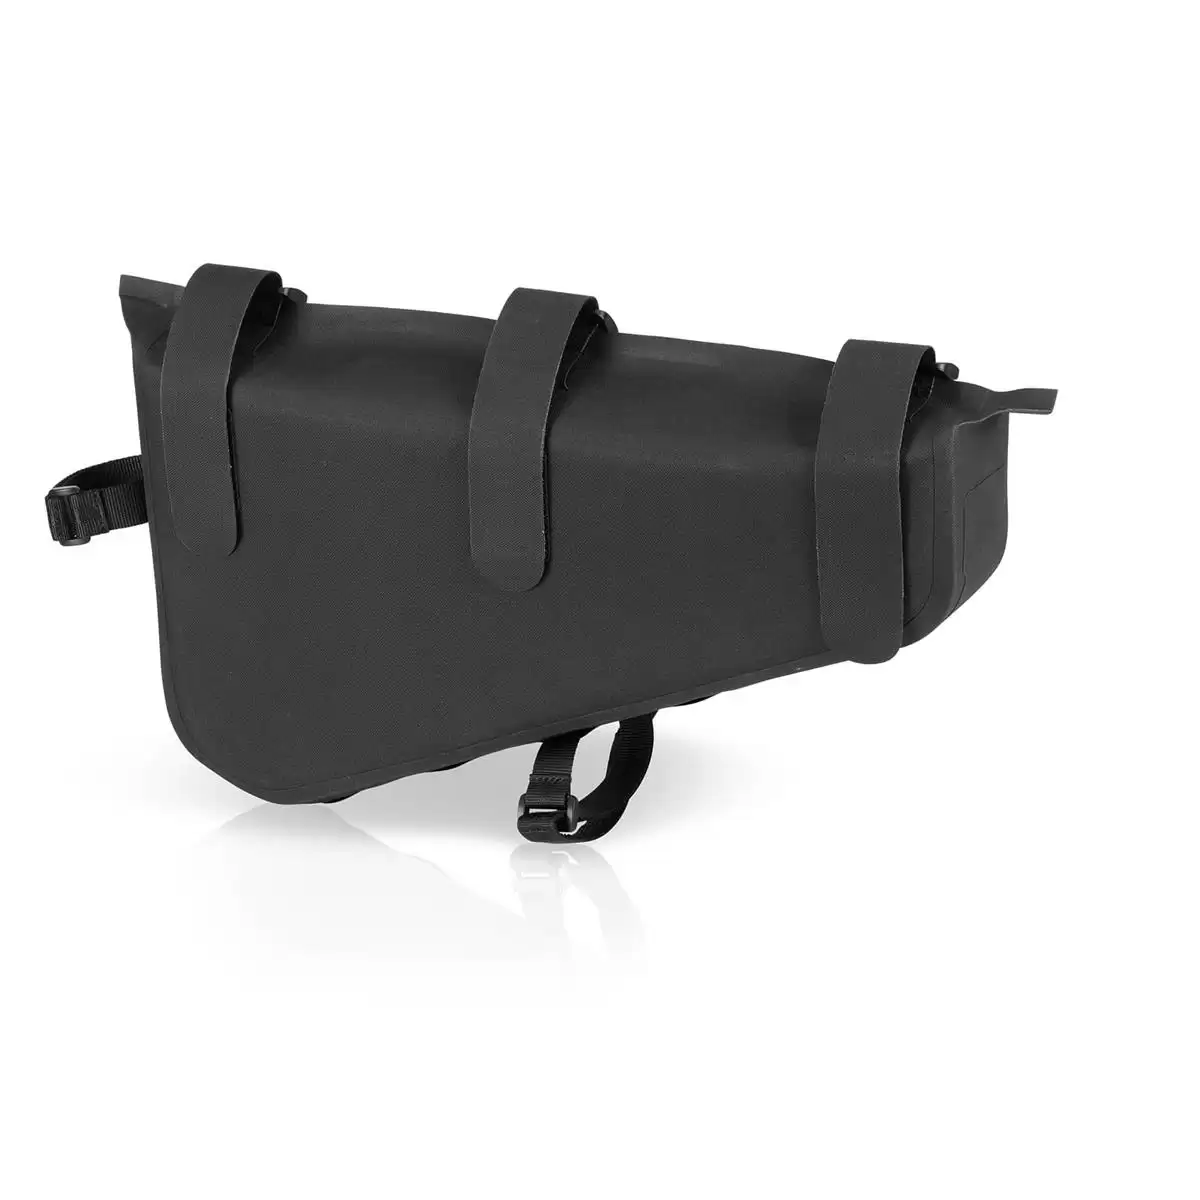 Central waterproof bag BA-W32 frame mount bag #1